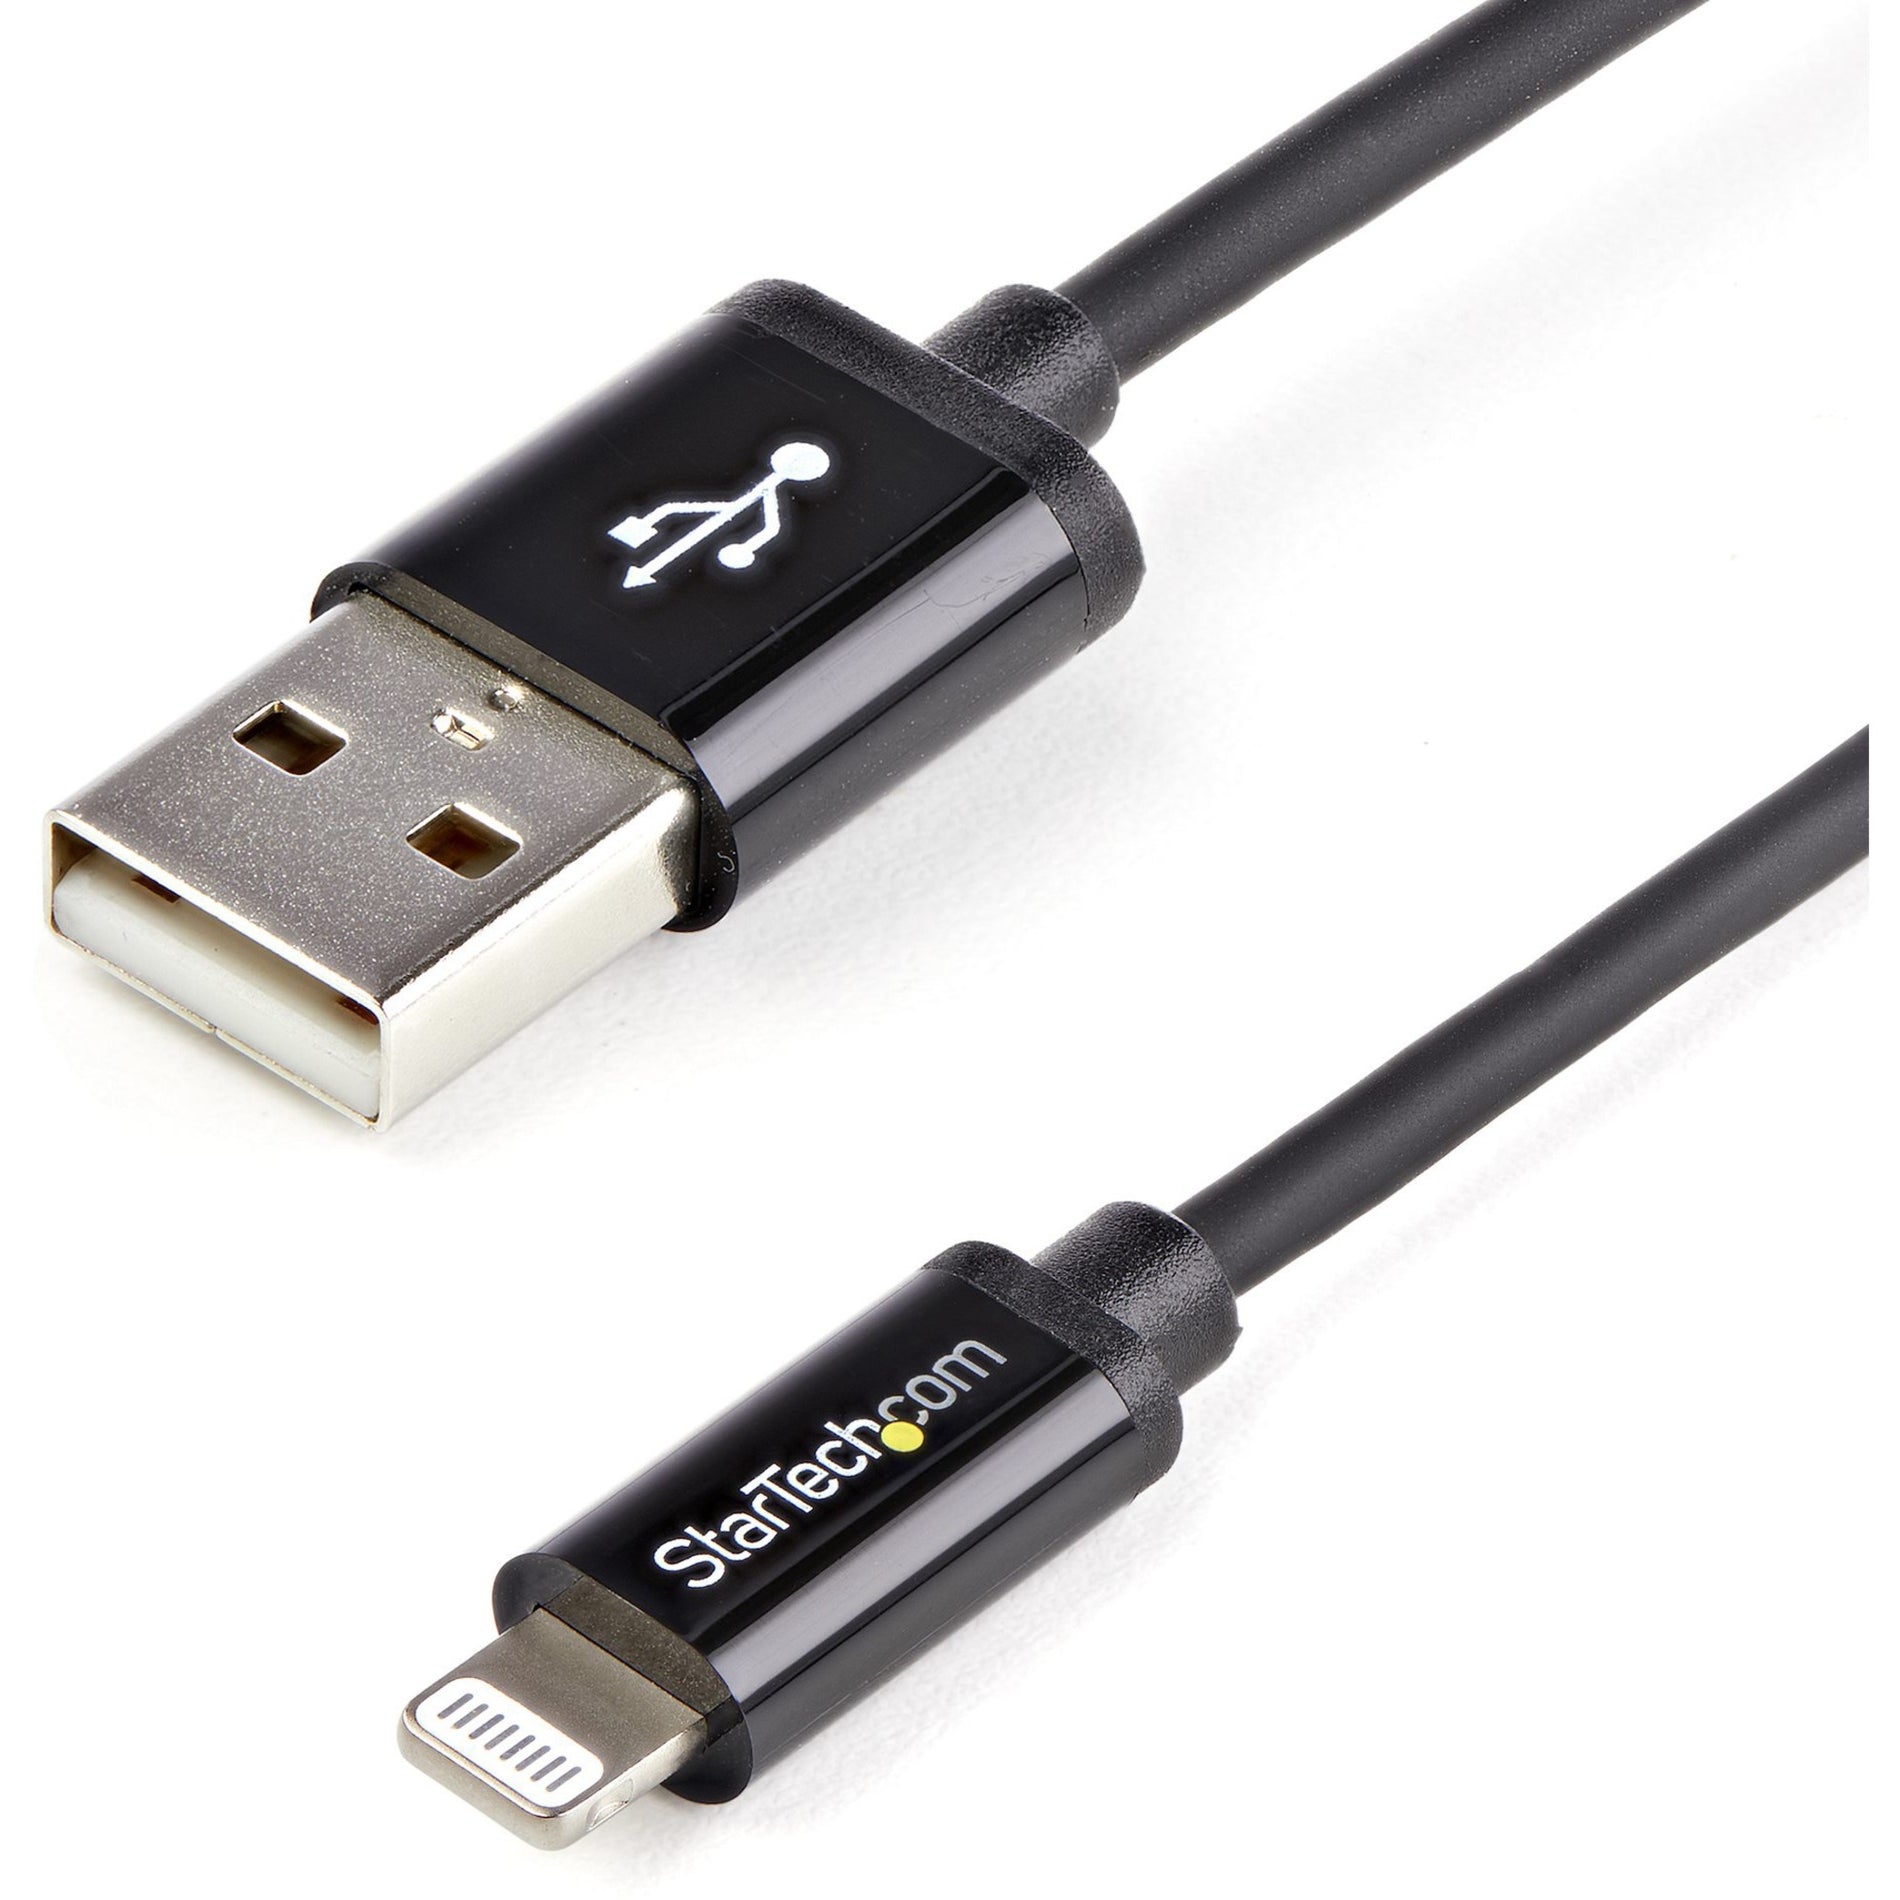 Câble de transfert de données Lightning/USB Sync/Charge StarTech.com USBLT2MB 6ft de long noir